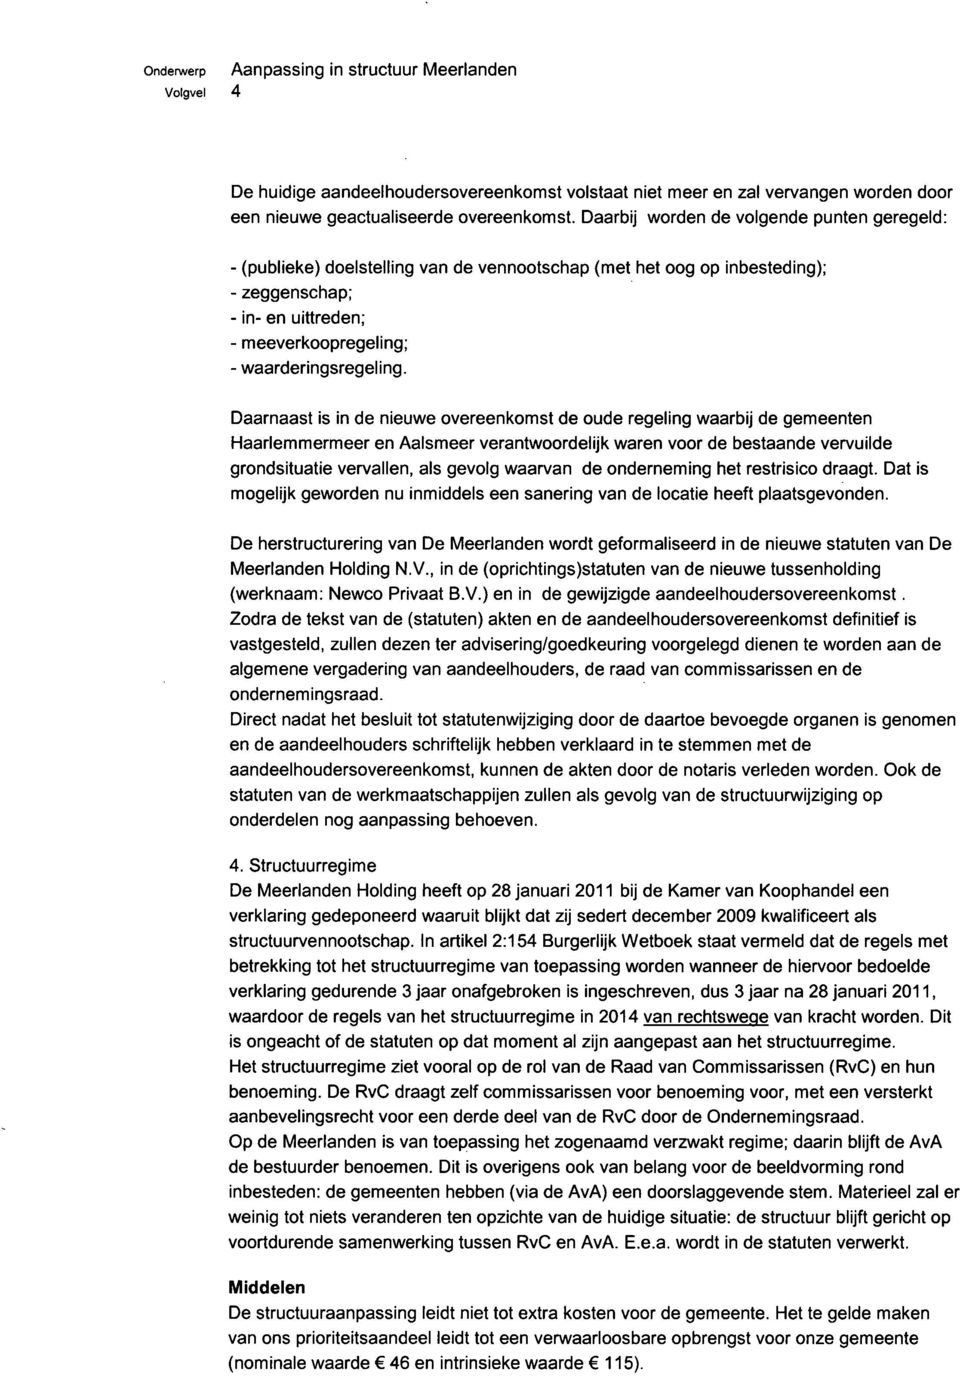 Daarnaast is in de nieuwe overeenkomst de oude regeling waarbij de gemeenten Haarlemmermeer en Aalsmeer verantwoordelijk waren voor de bestaande vervuilde grondsituatie vervallen, als gevolg waarvan